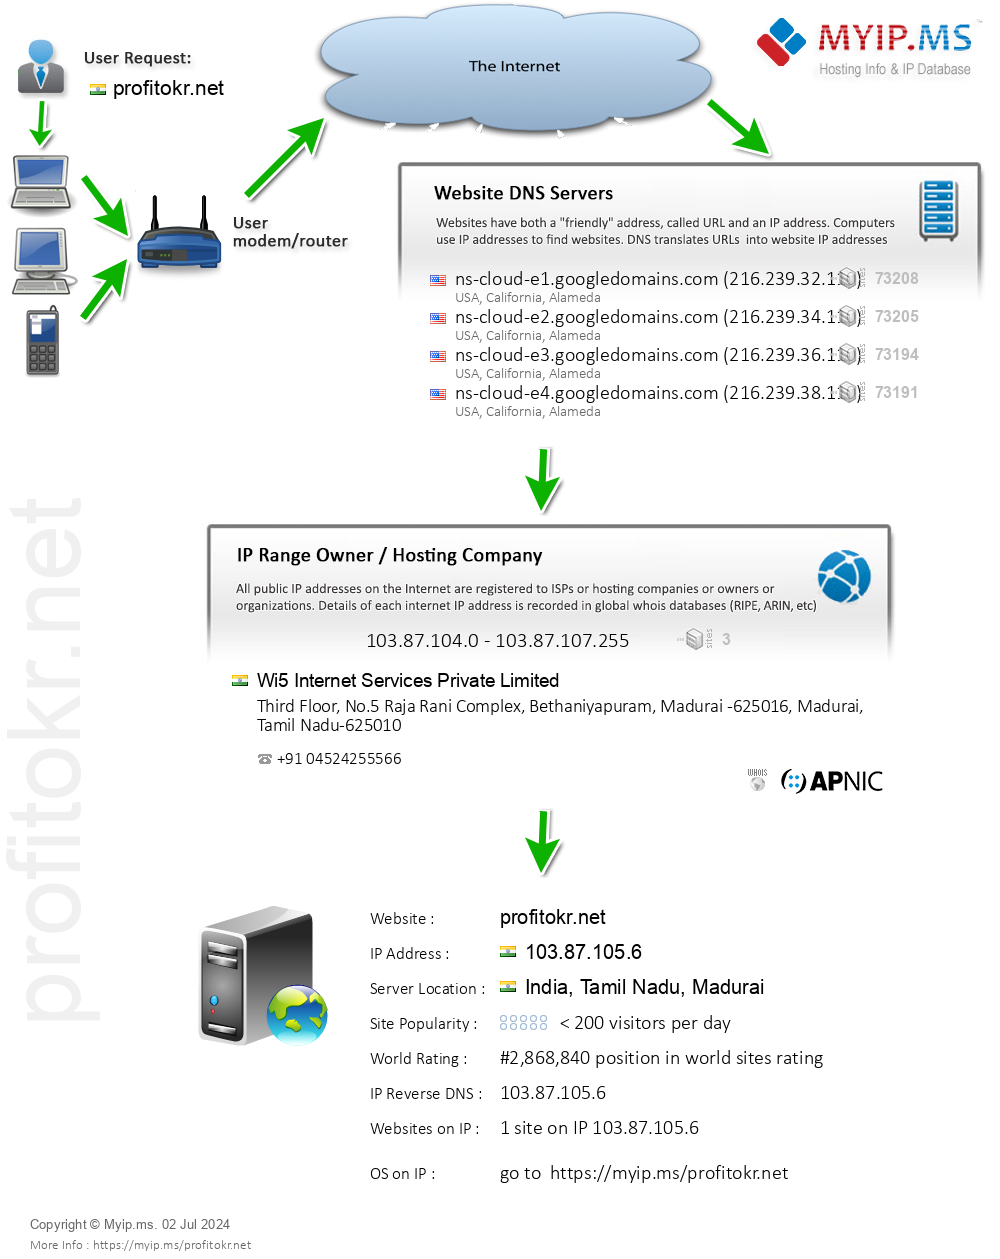 Profitokr.net - Website Hosting Visual IP Diagram